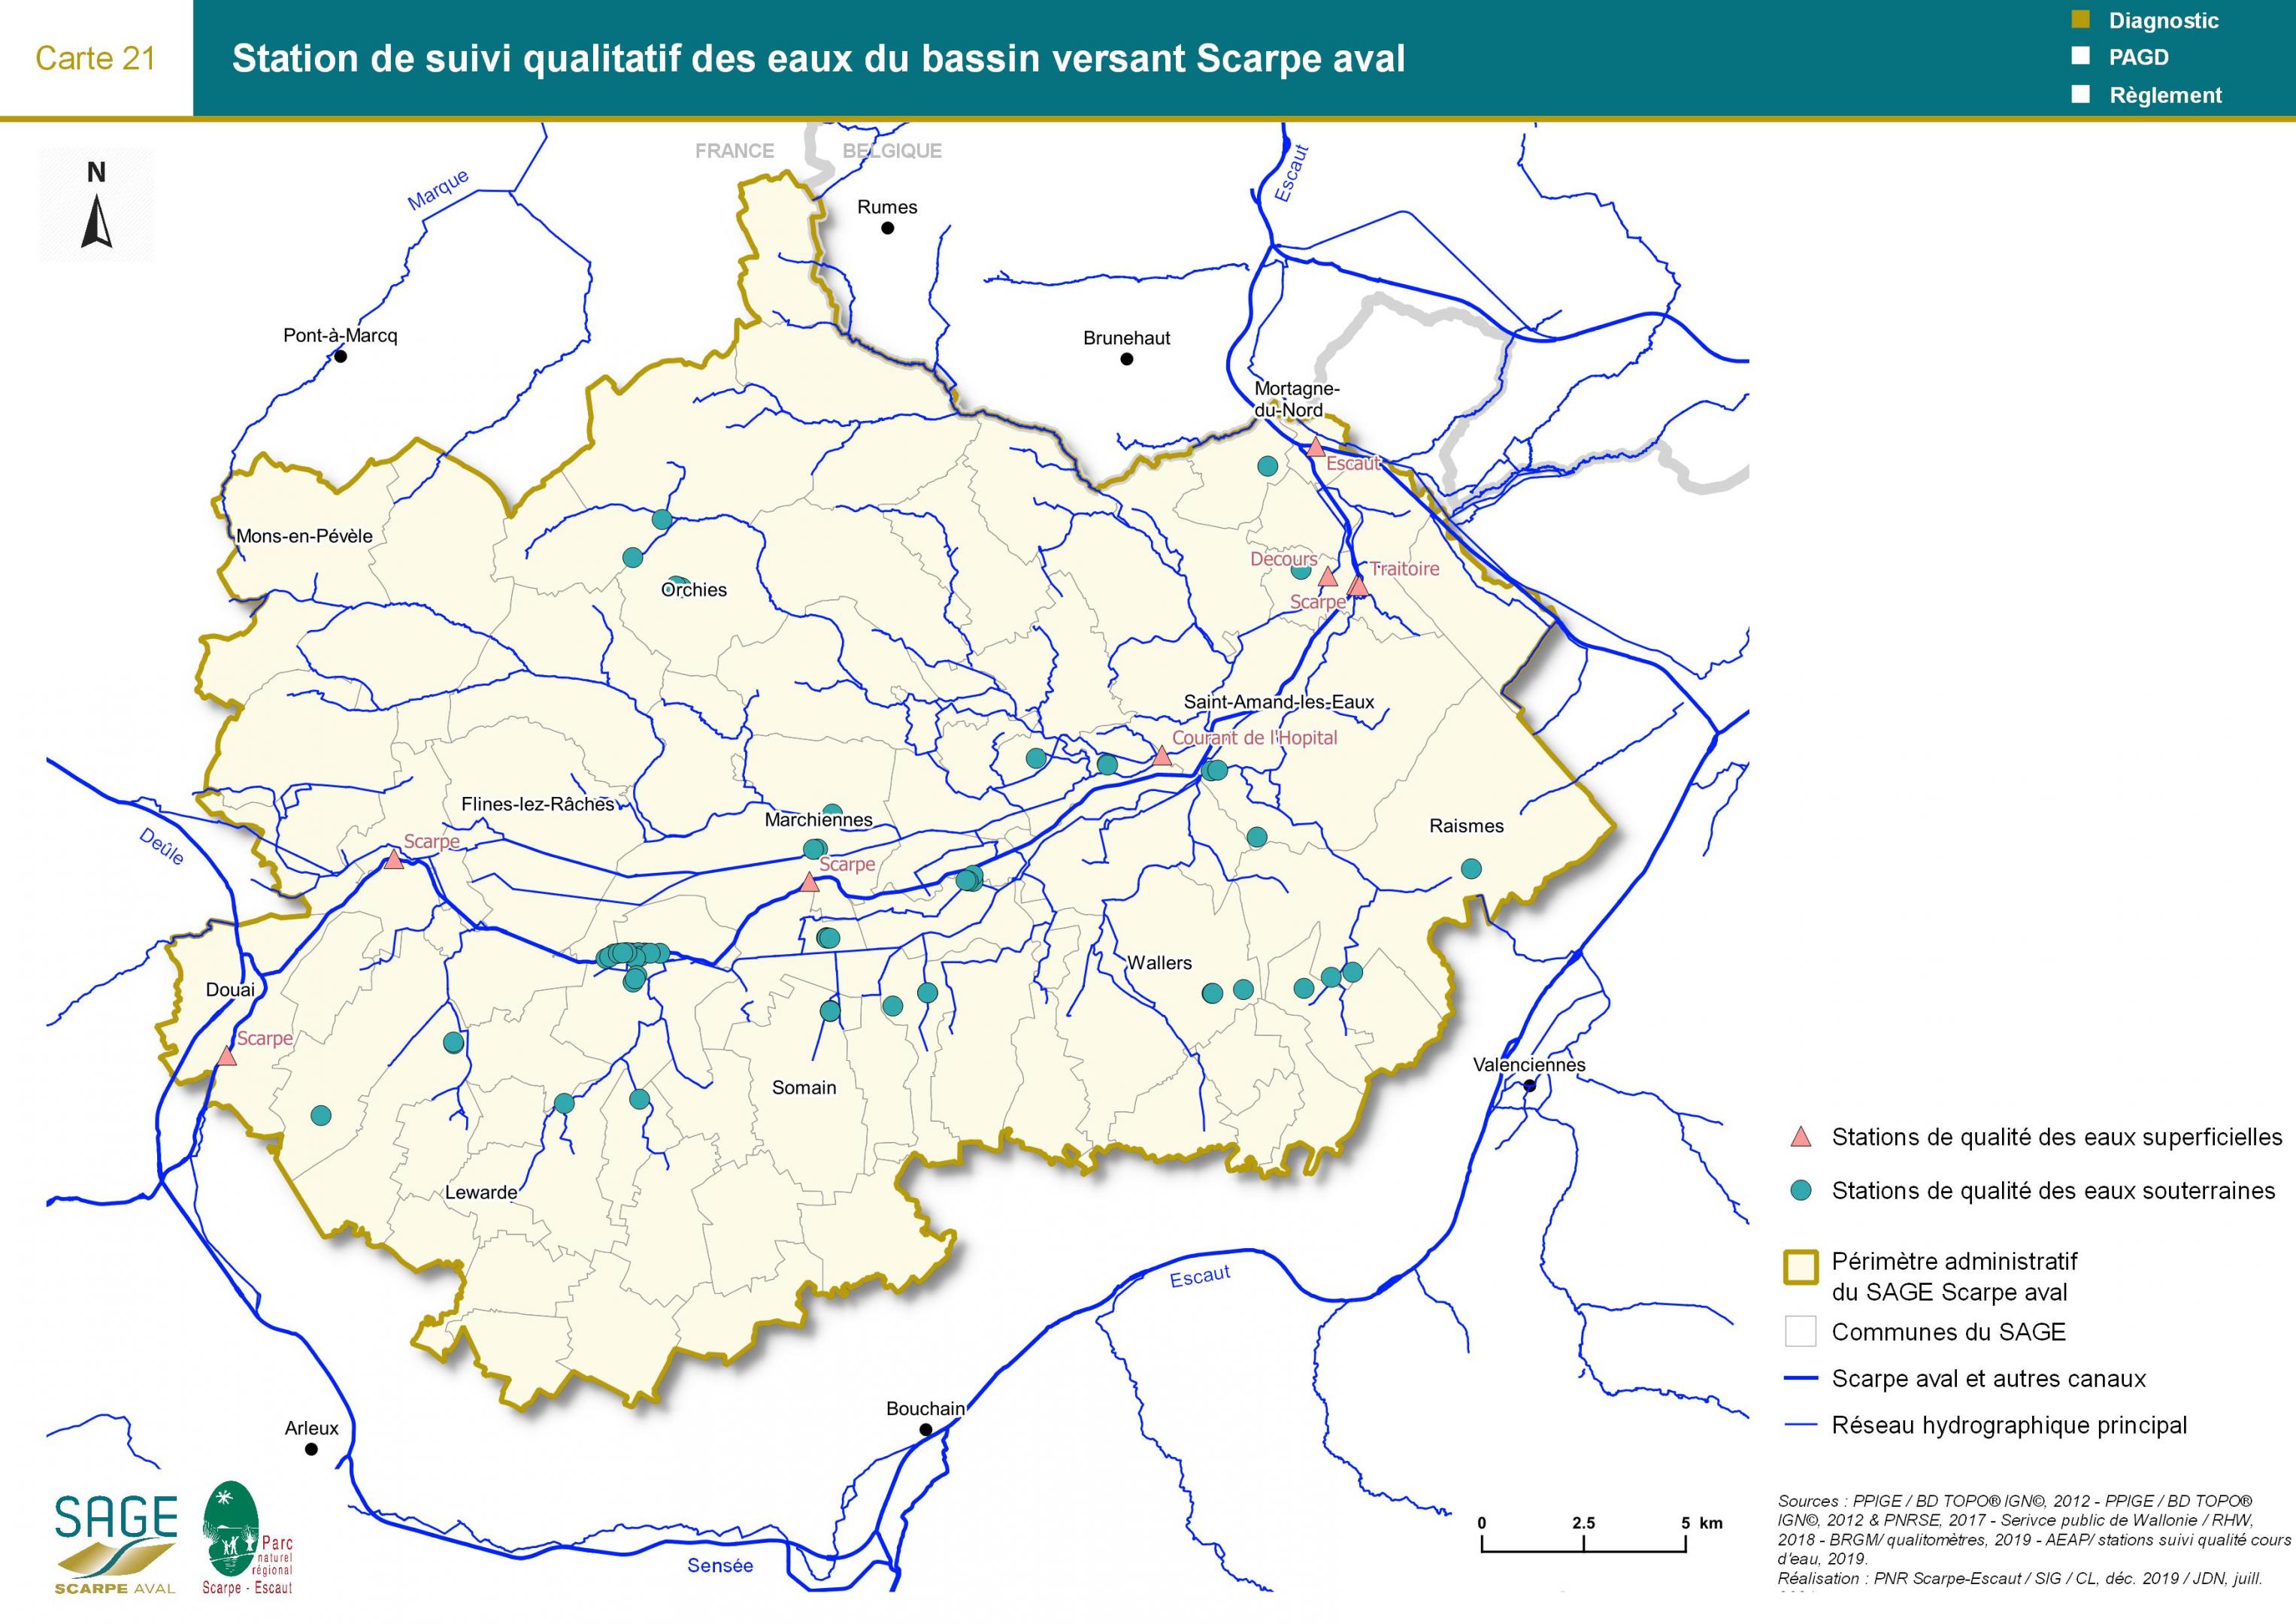 Etat des lieux - Carte 21 : Station de suivi qualitatif des eaux du bassin versant Scarpe aval